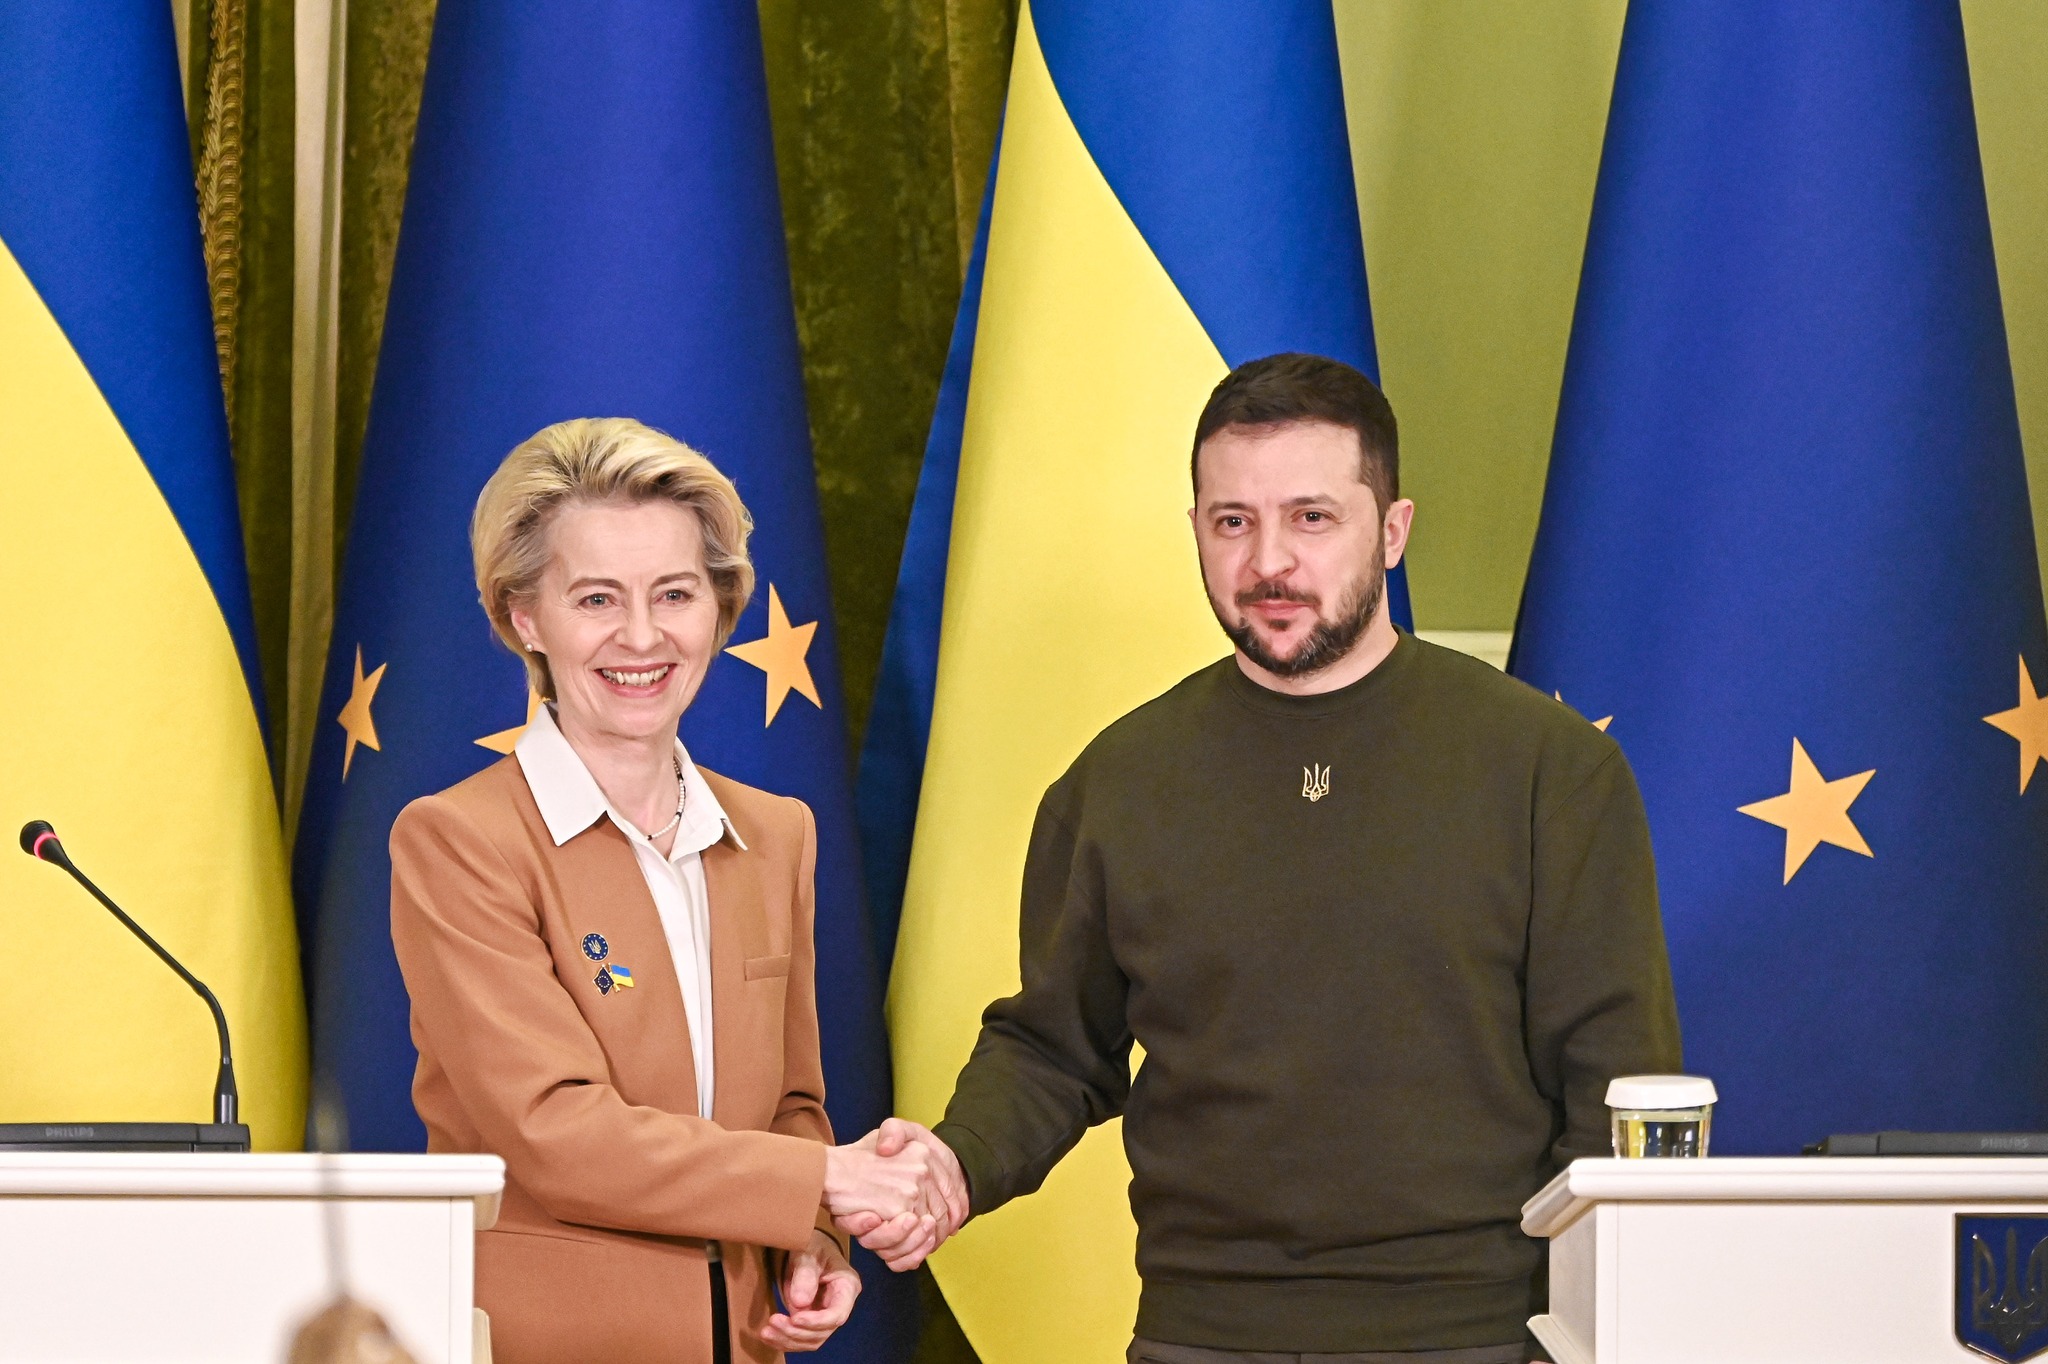 Меморандум про взаєморозуміння між Україною та Європейським Союзом щодо стратегічного партнерства у сфері біометану, водню та інших синтетичних газів